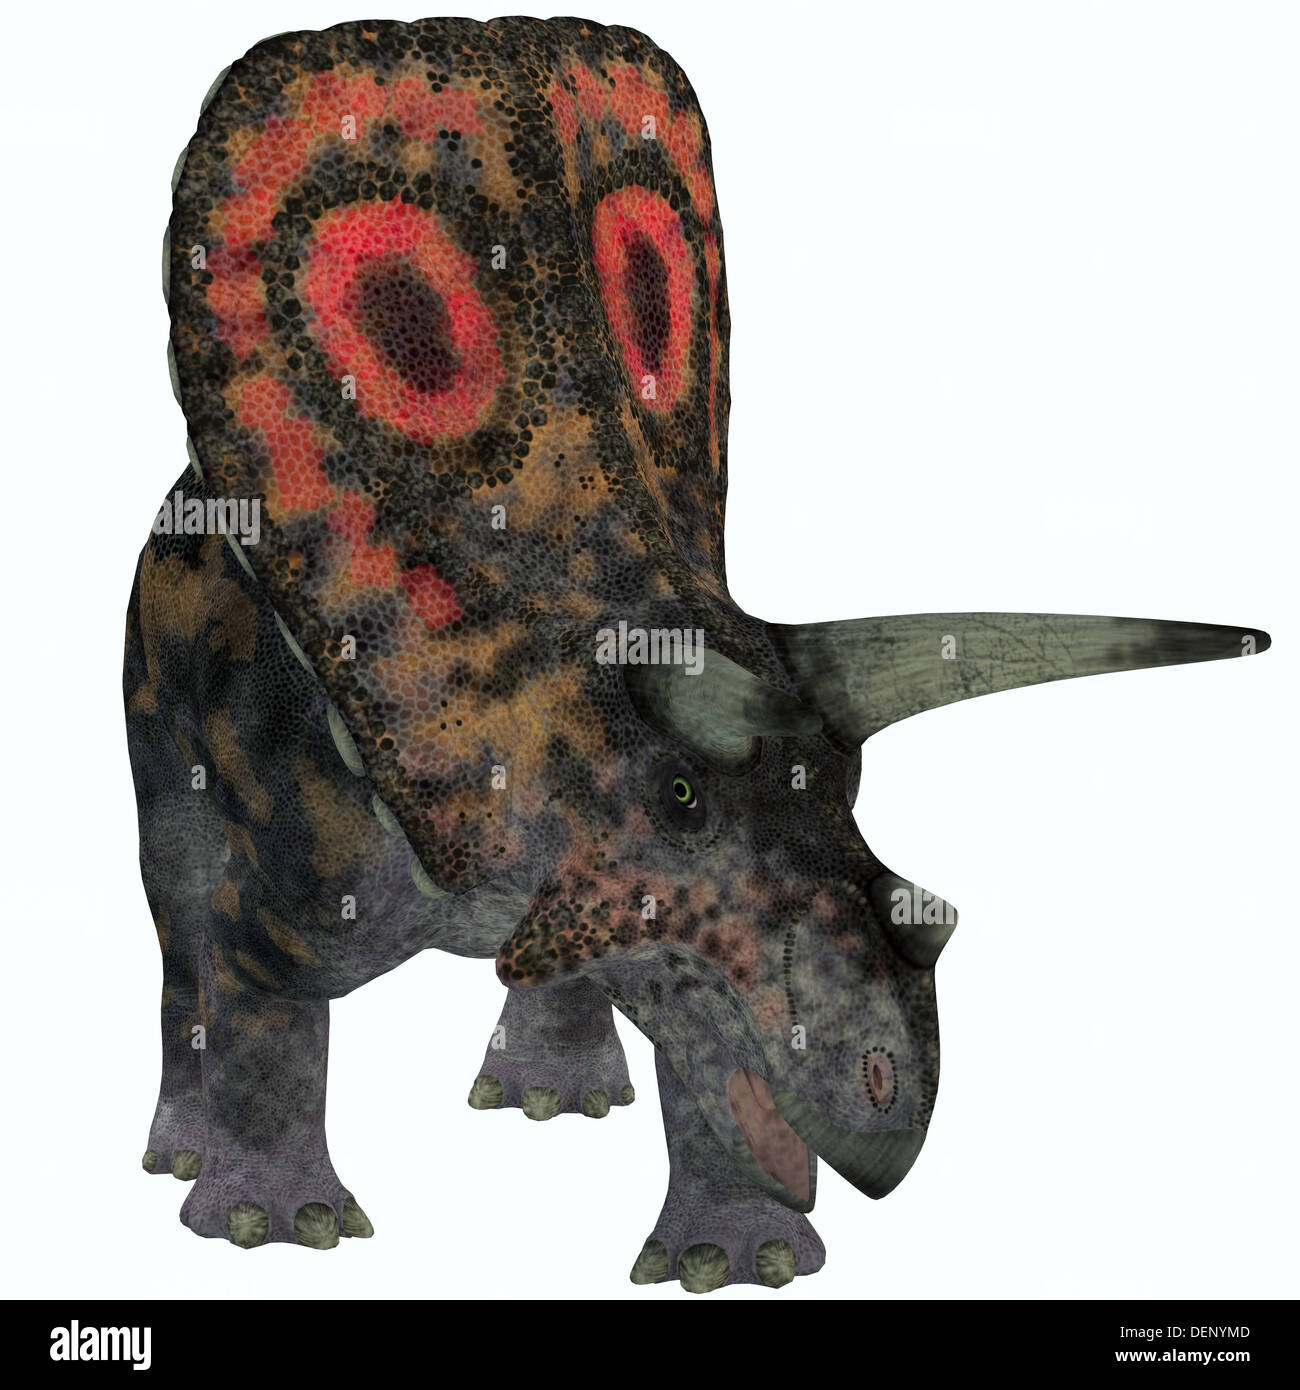 Torosaurus war die größte Schädel von jedem bekannten Landtier. Es war pflanzenfressenden Dinosaurier aus der späten Kreidezeit. Stockfoto